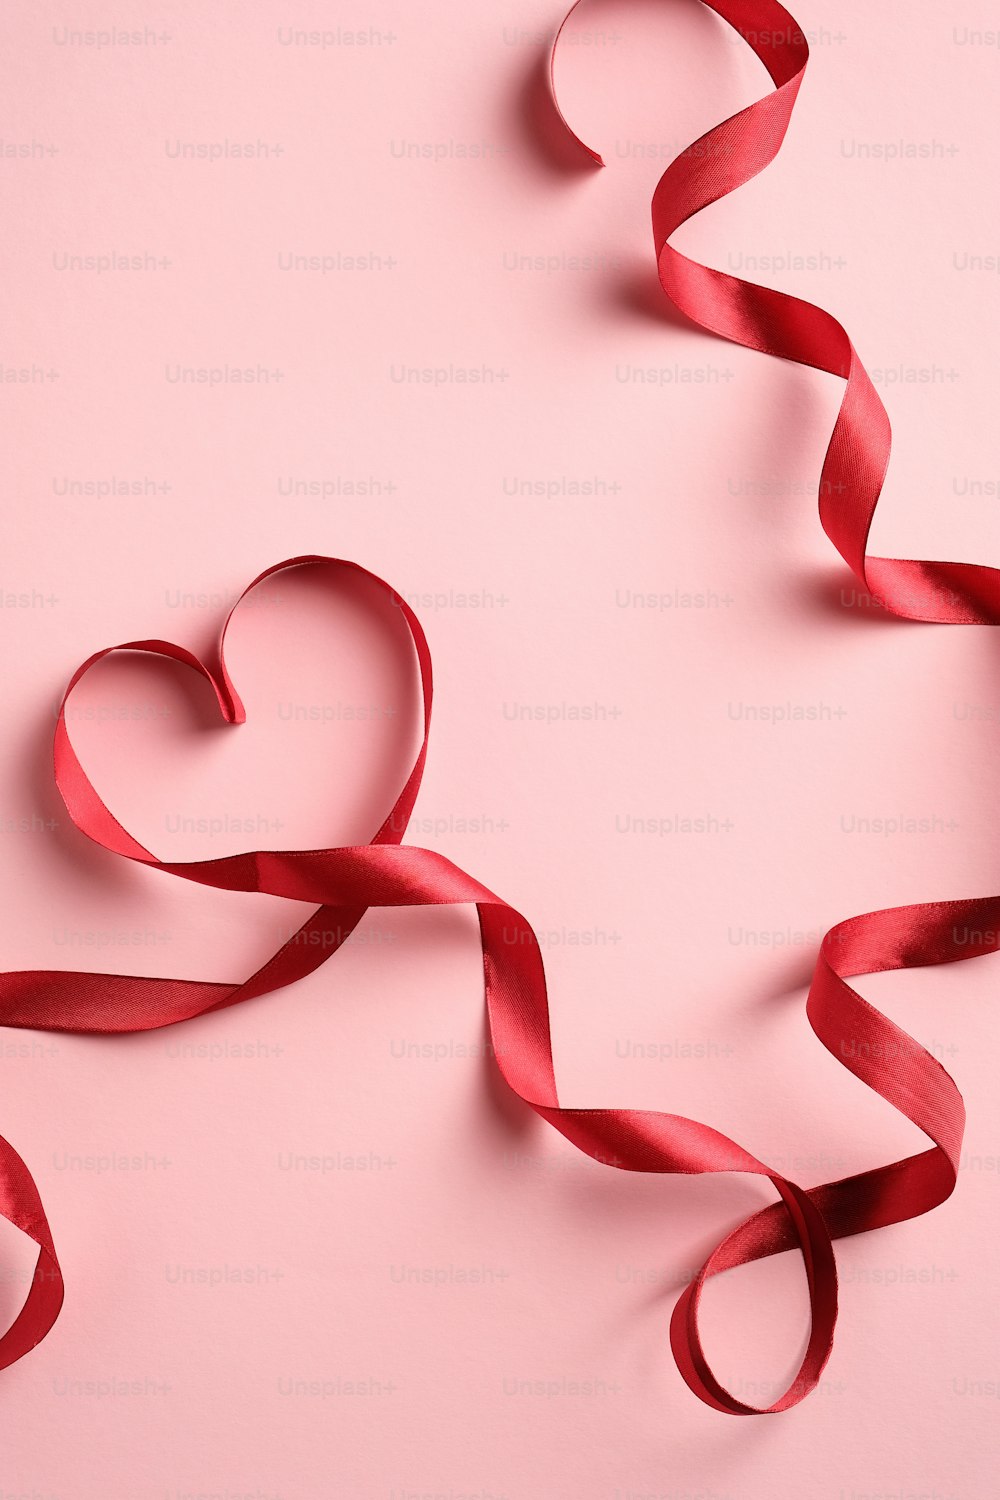 분홍색 배경에 하트 모양의 빨간 리본. 사랑, 로맨스 개념. 발렌타인 데이 또는 어머니의 날 인사말 카드 템플릿입니다.